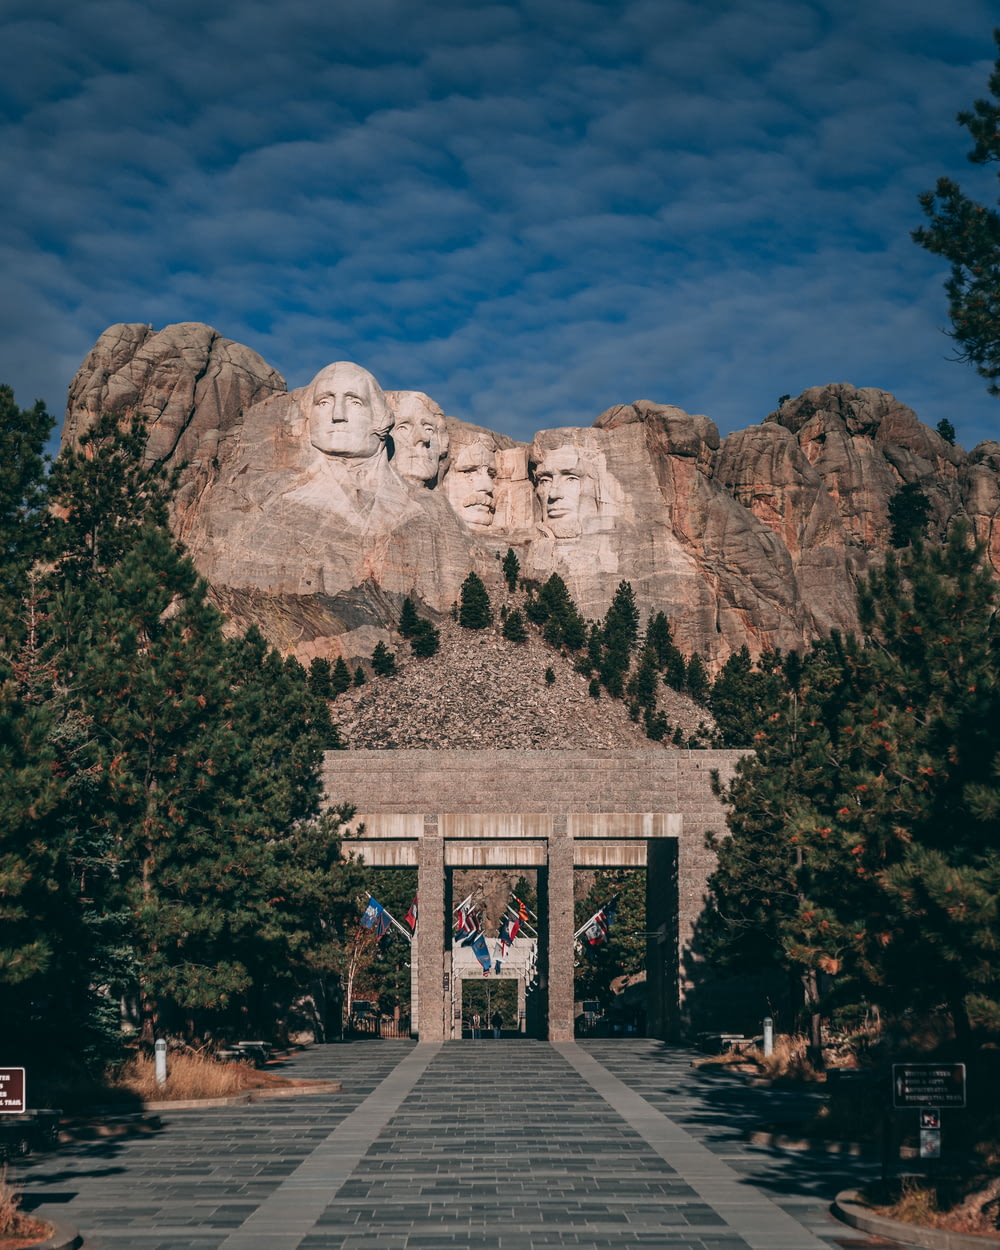 Mount Rushmore during daytime